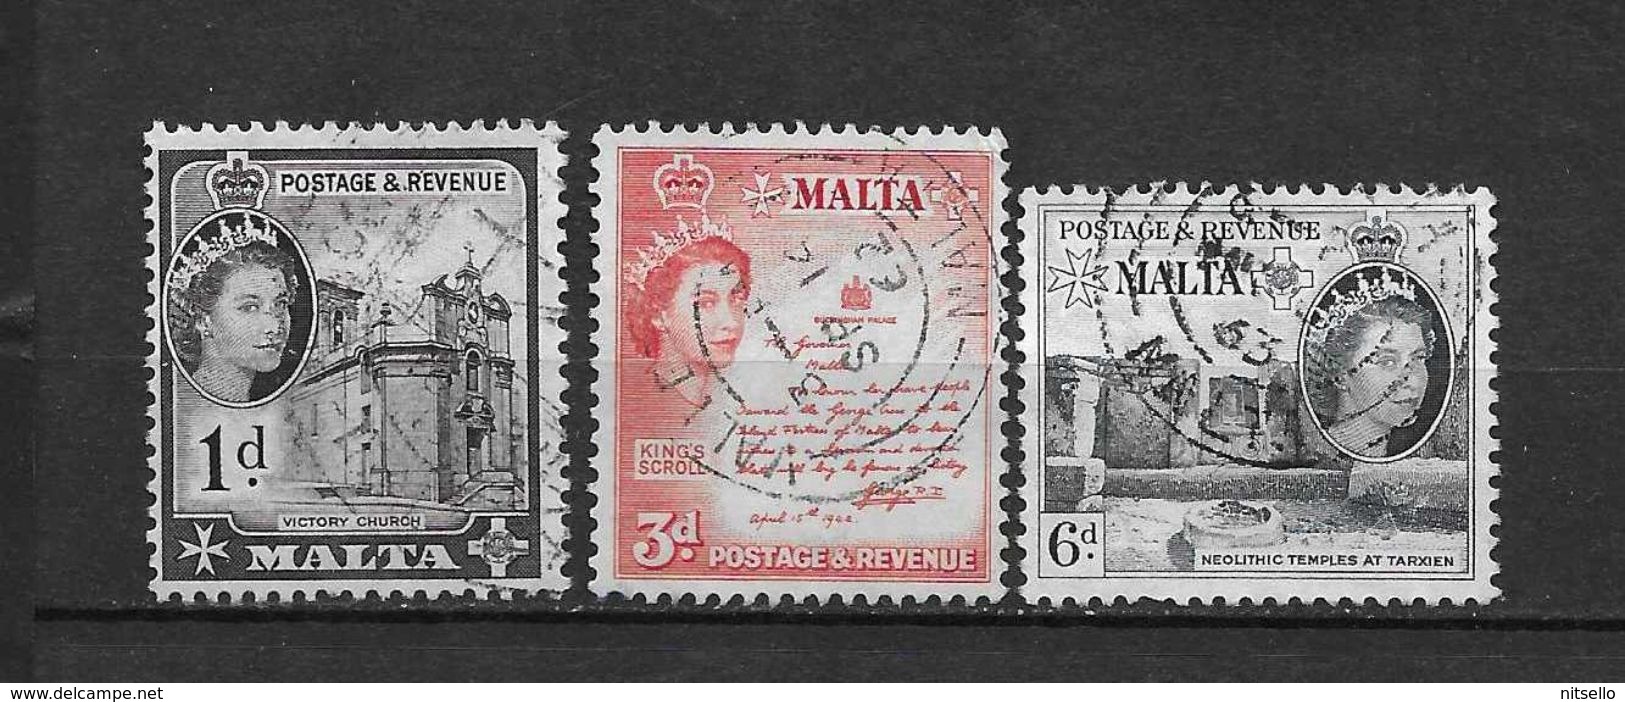 LOTE 1984    ///   (C006) MALTA 1954     YVERT Nº: 241-245 Y 247   ¡¡¡¡¡ LIQUIDATION !!!!!!! - Malta (...-1964)